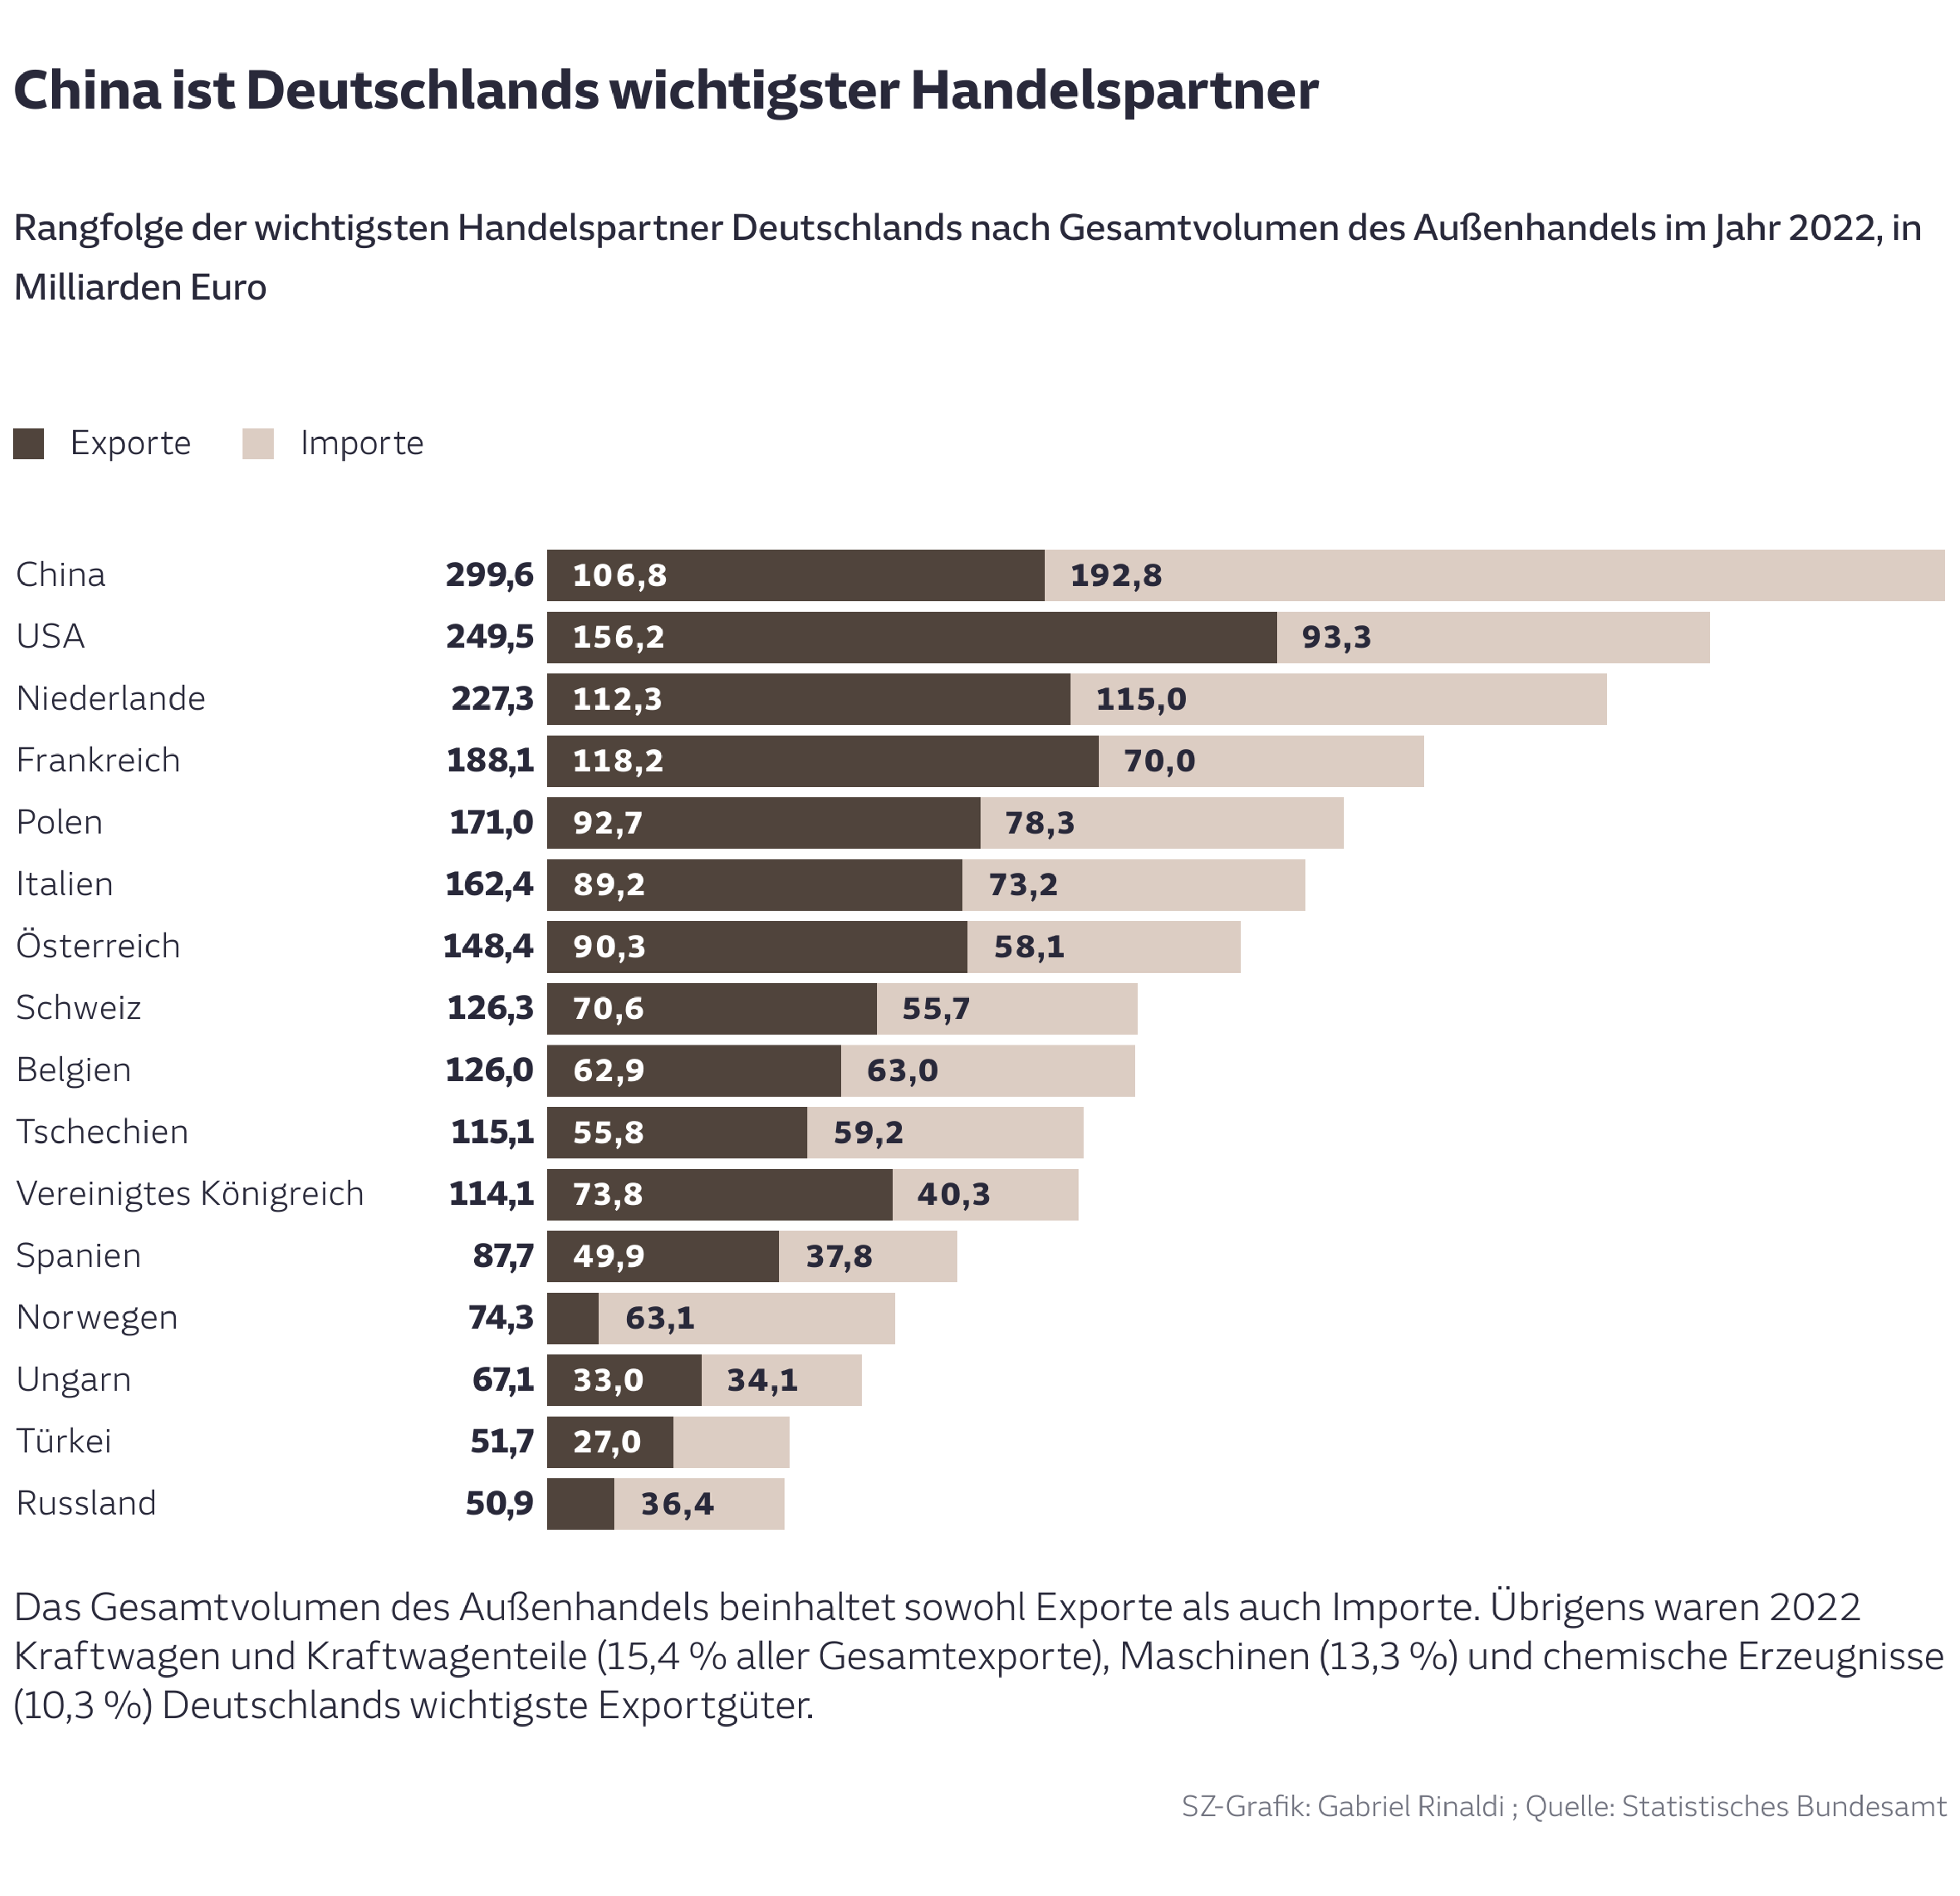 China ist Deutschlands wichtigster Handelspartner